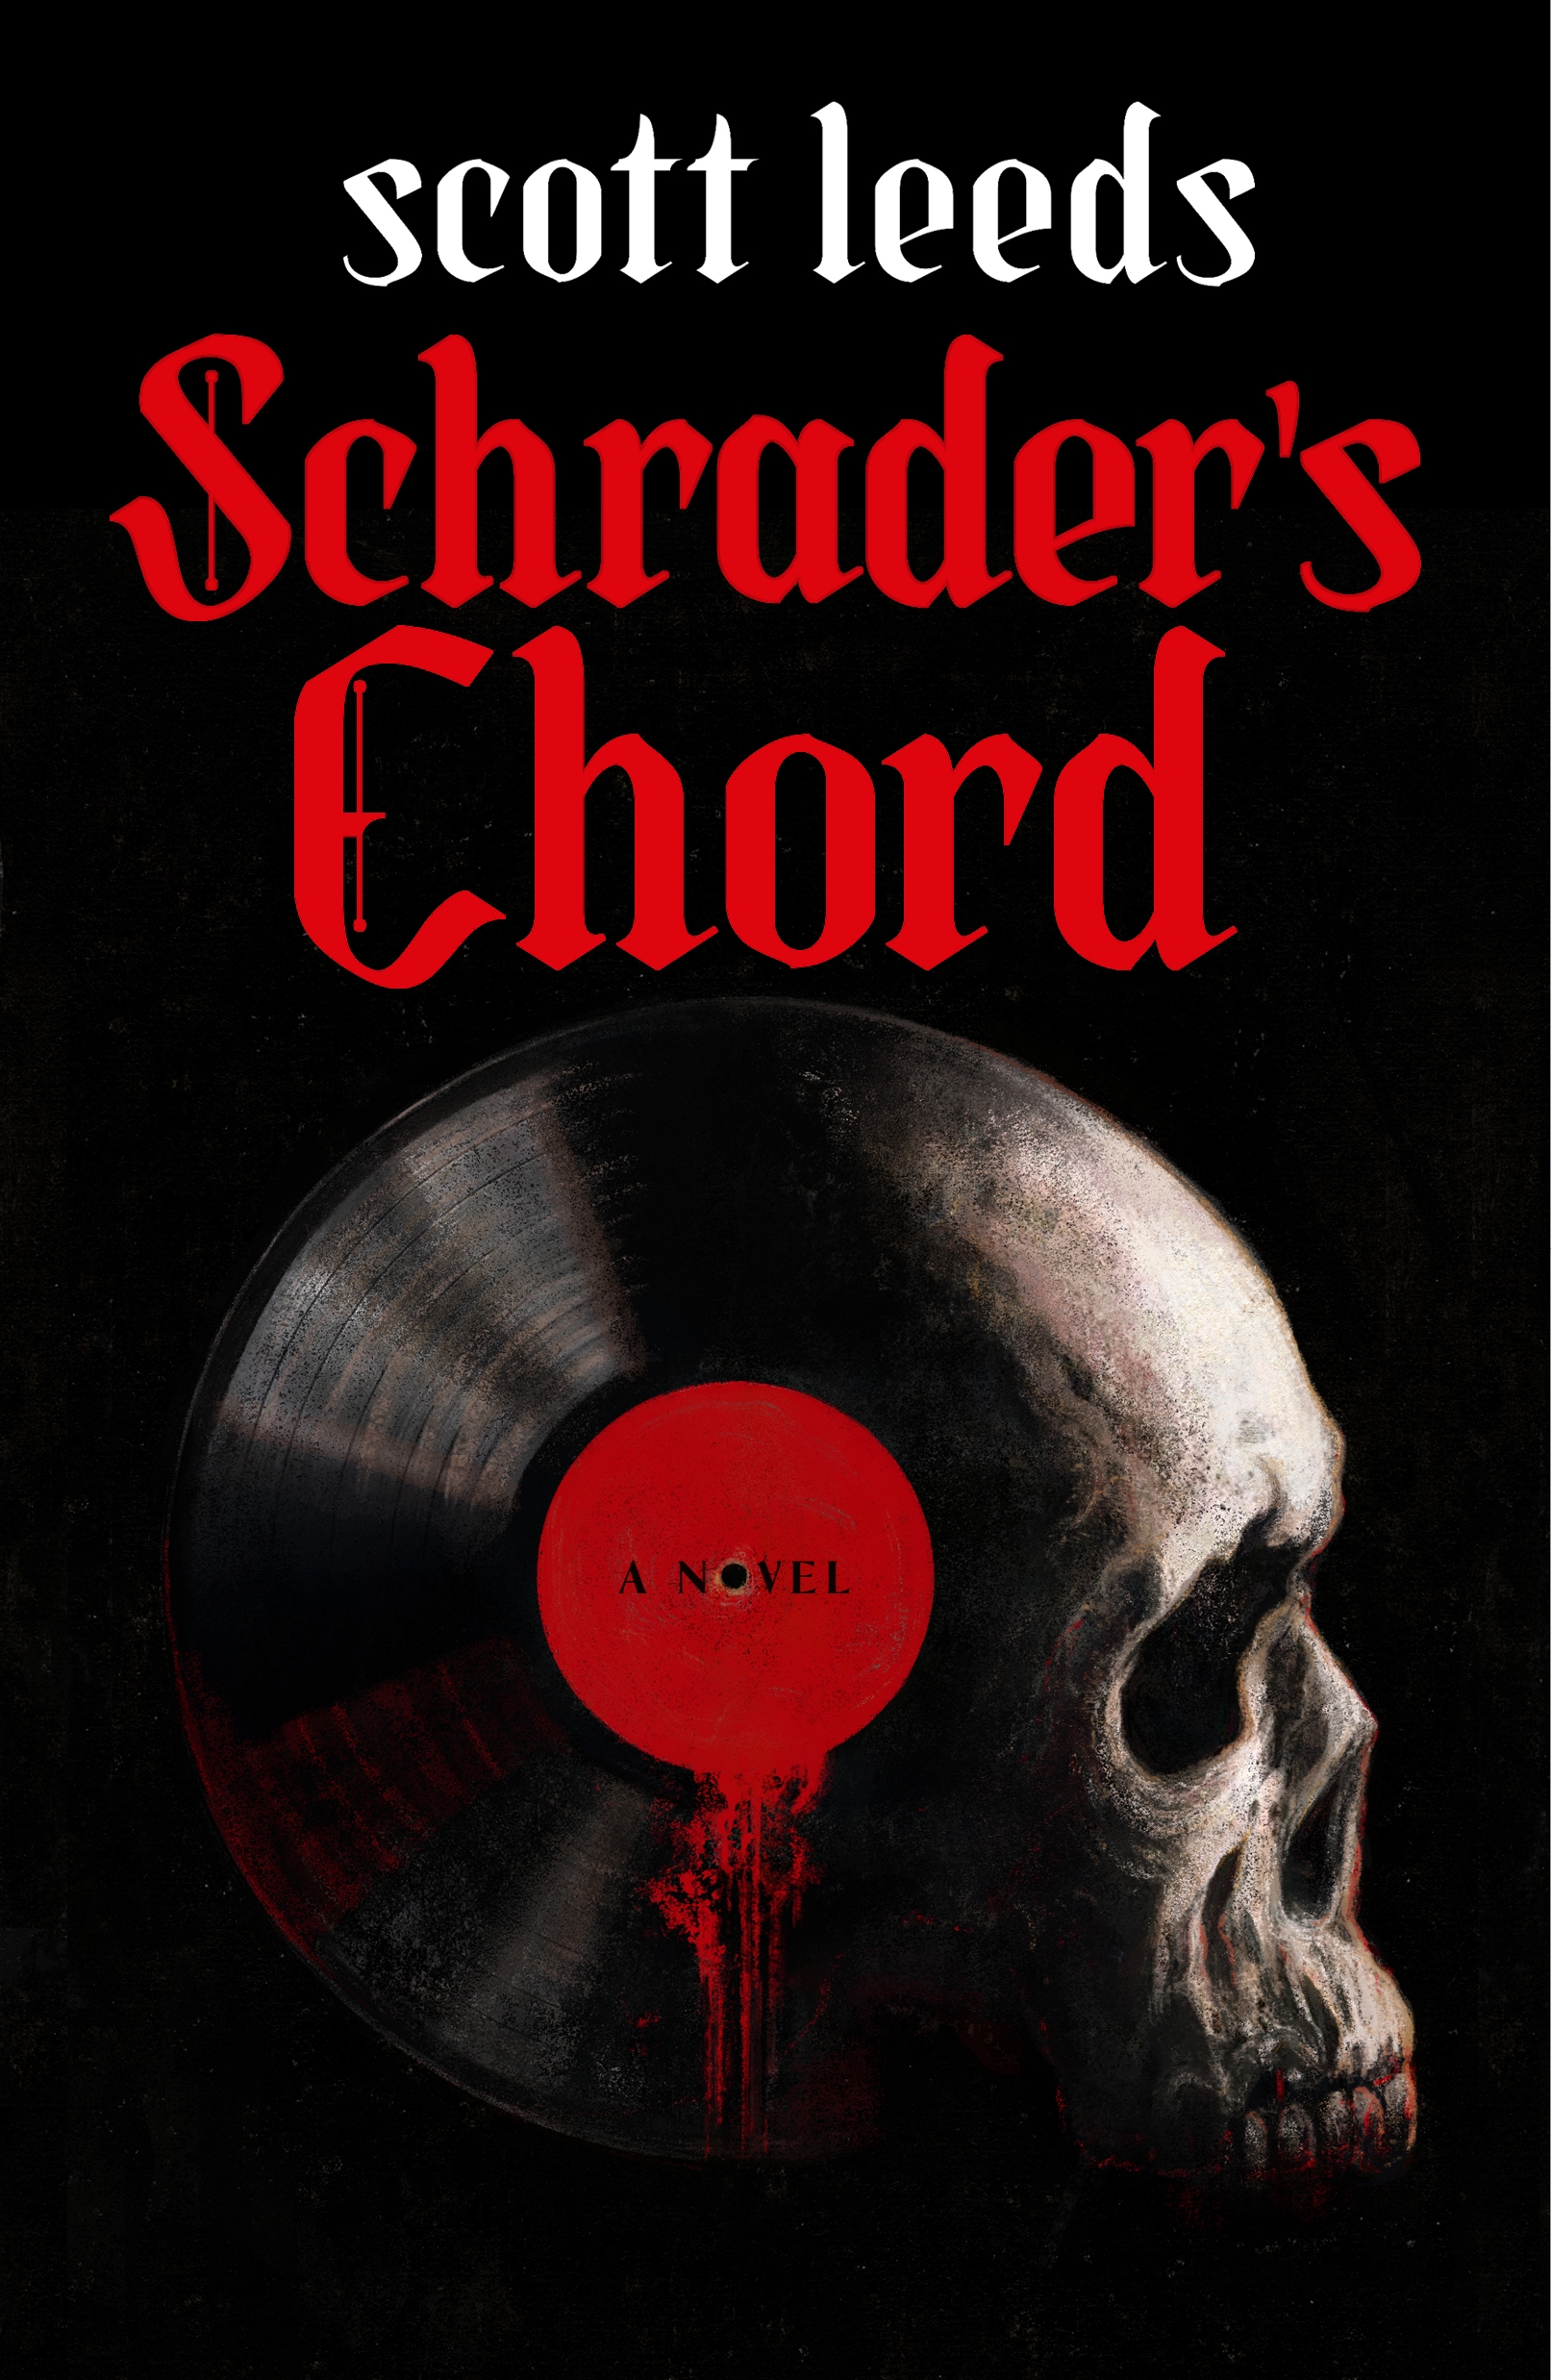 Schrader's Chord : A Novel by Scott Leeds